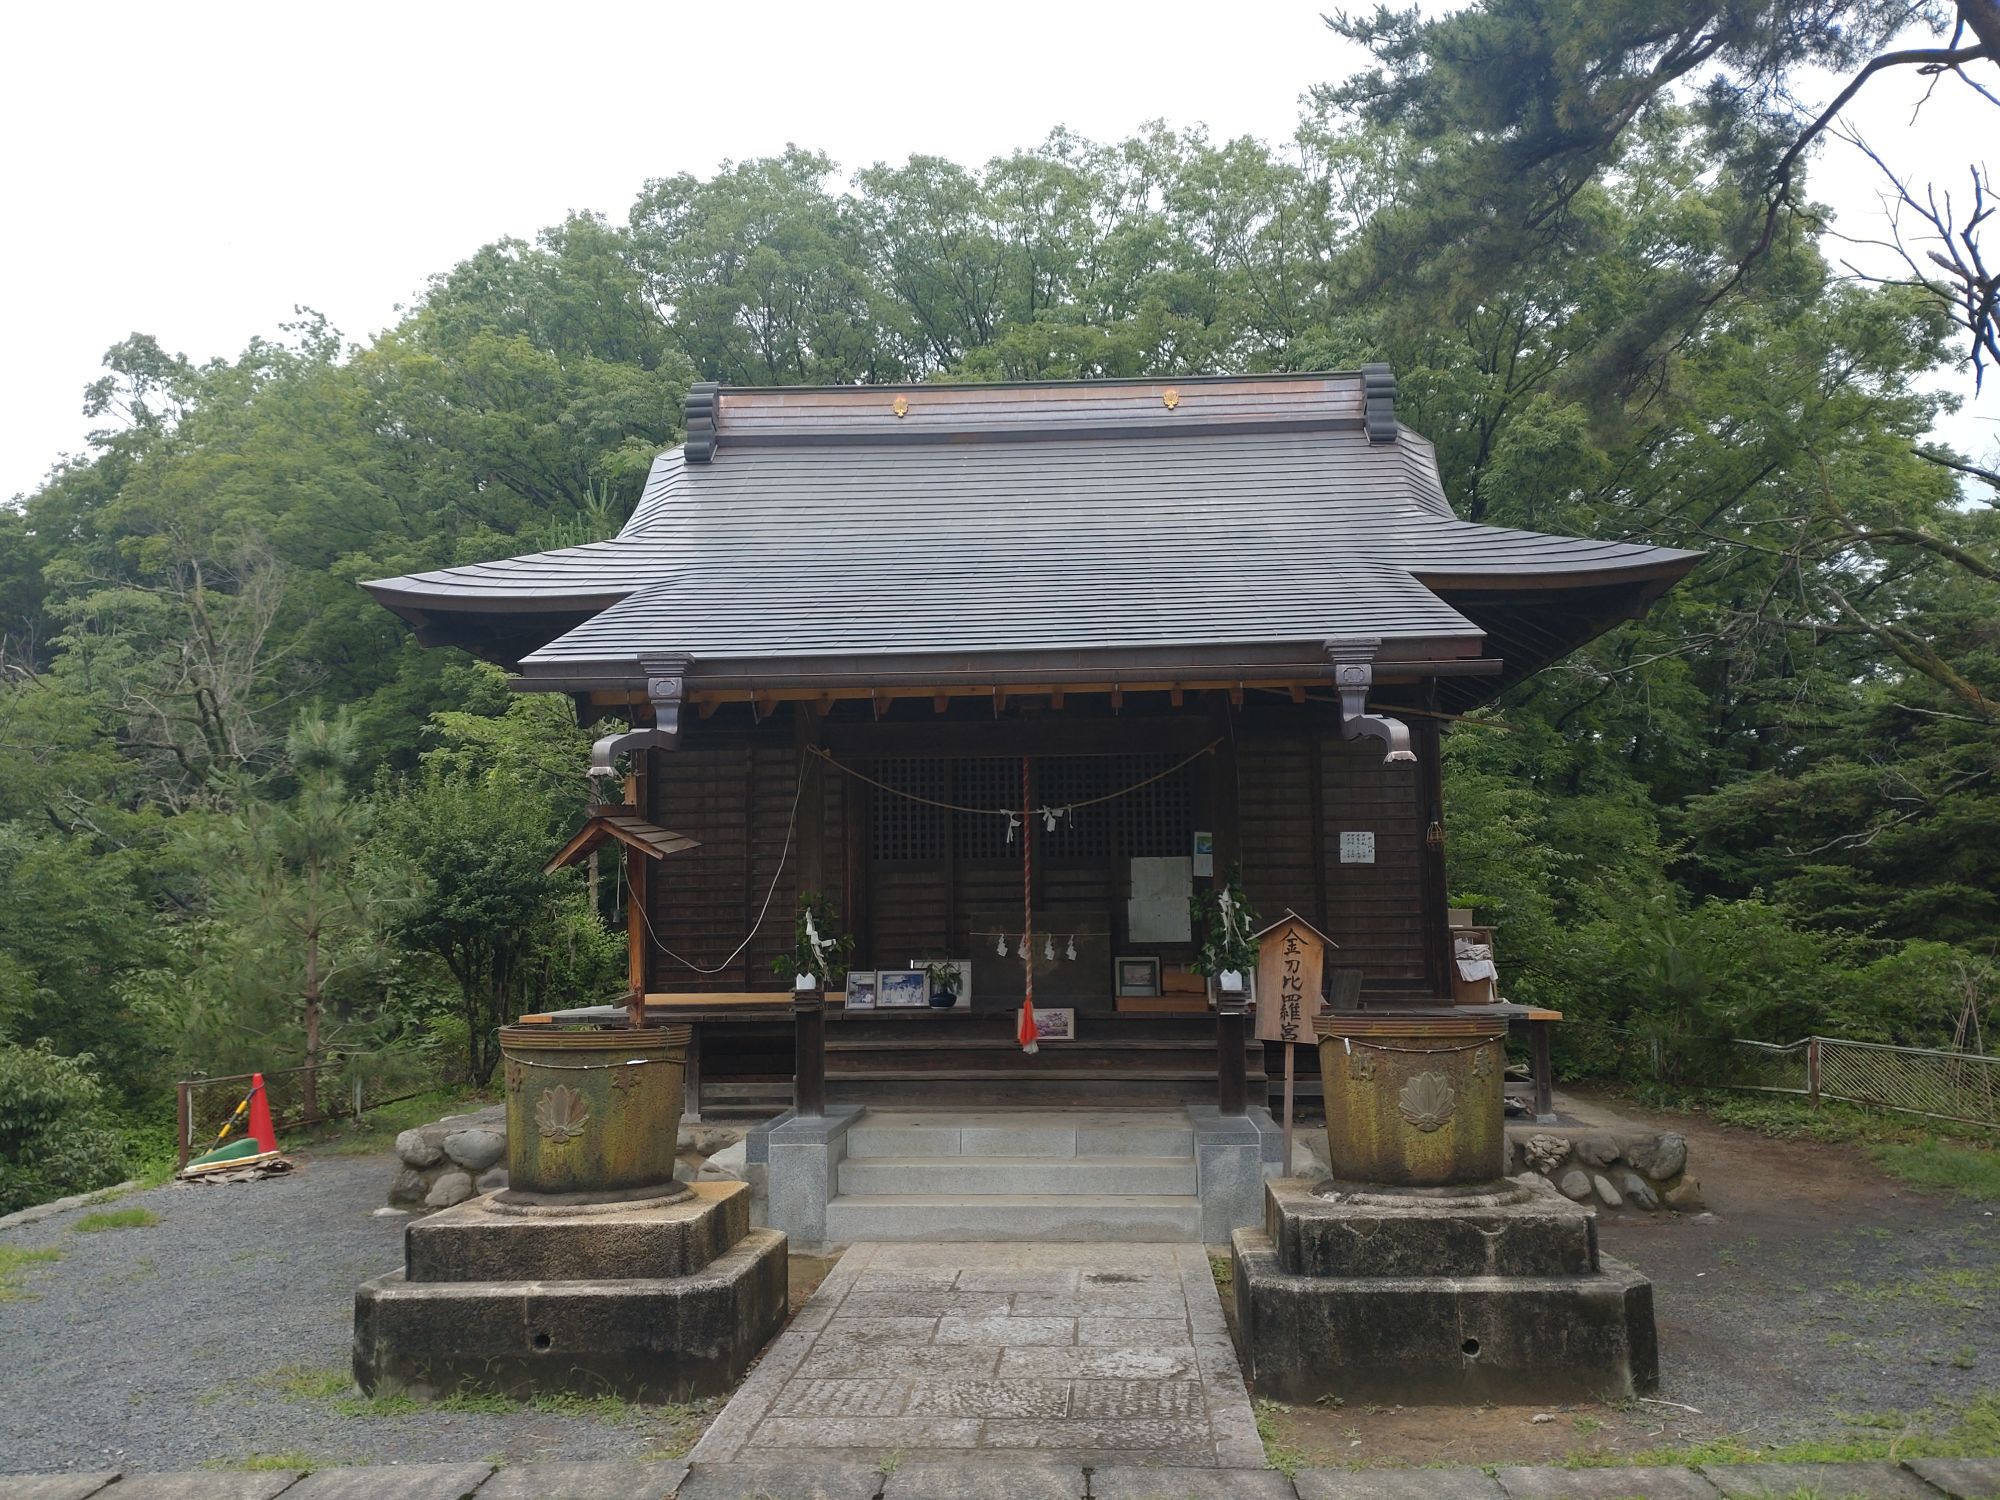 【最近話題の神社】武州青金刀比羅神社に行ってきました。